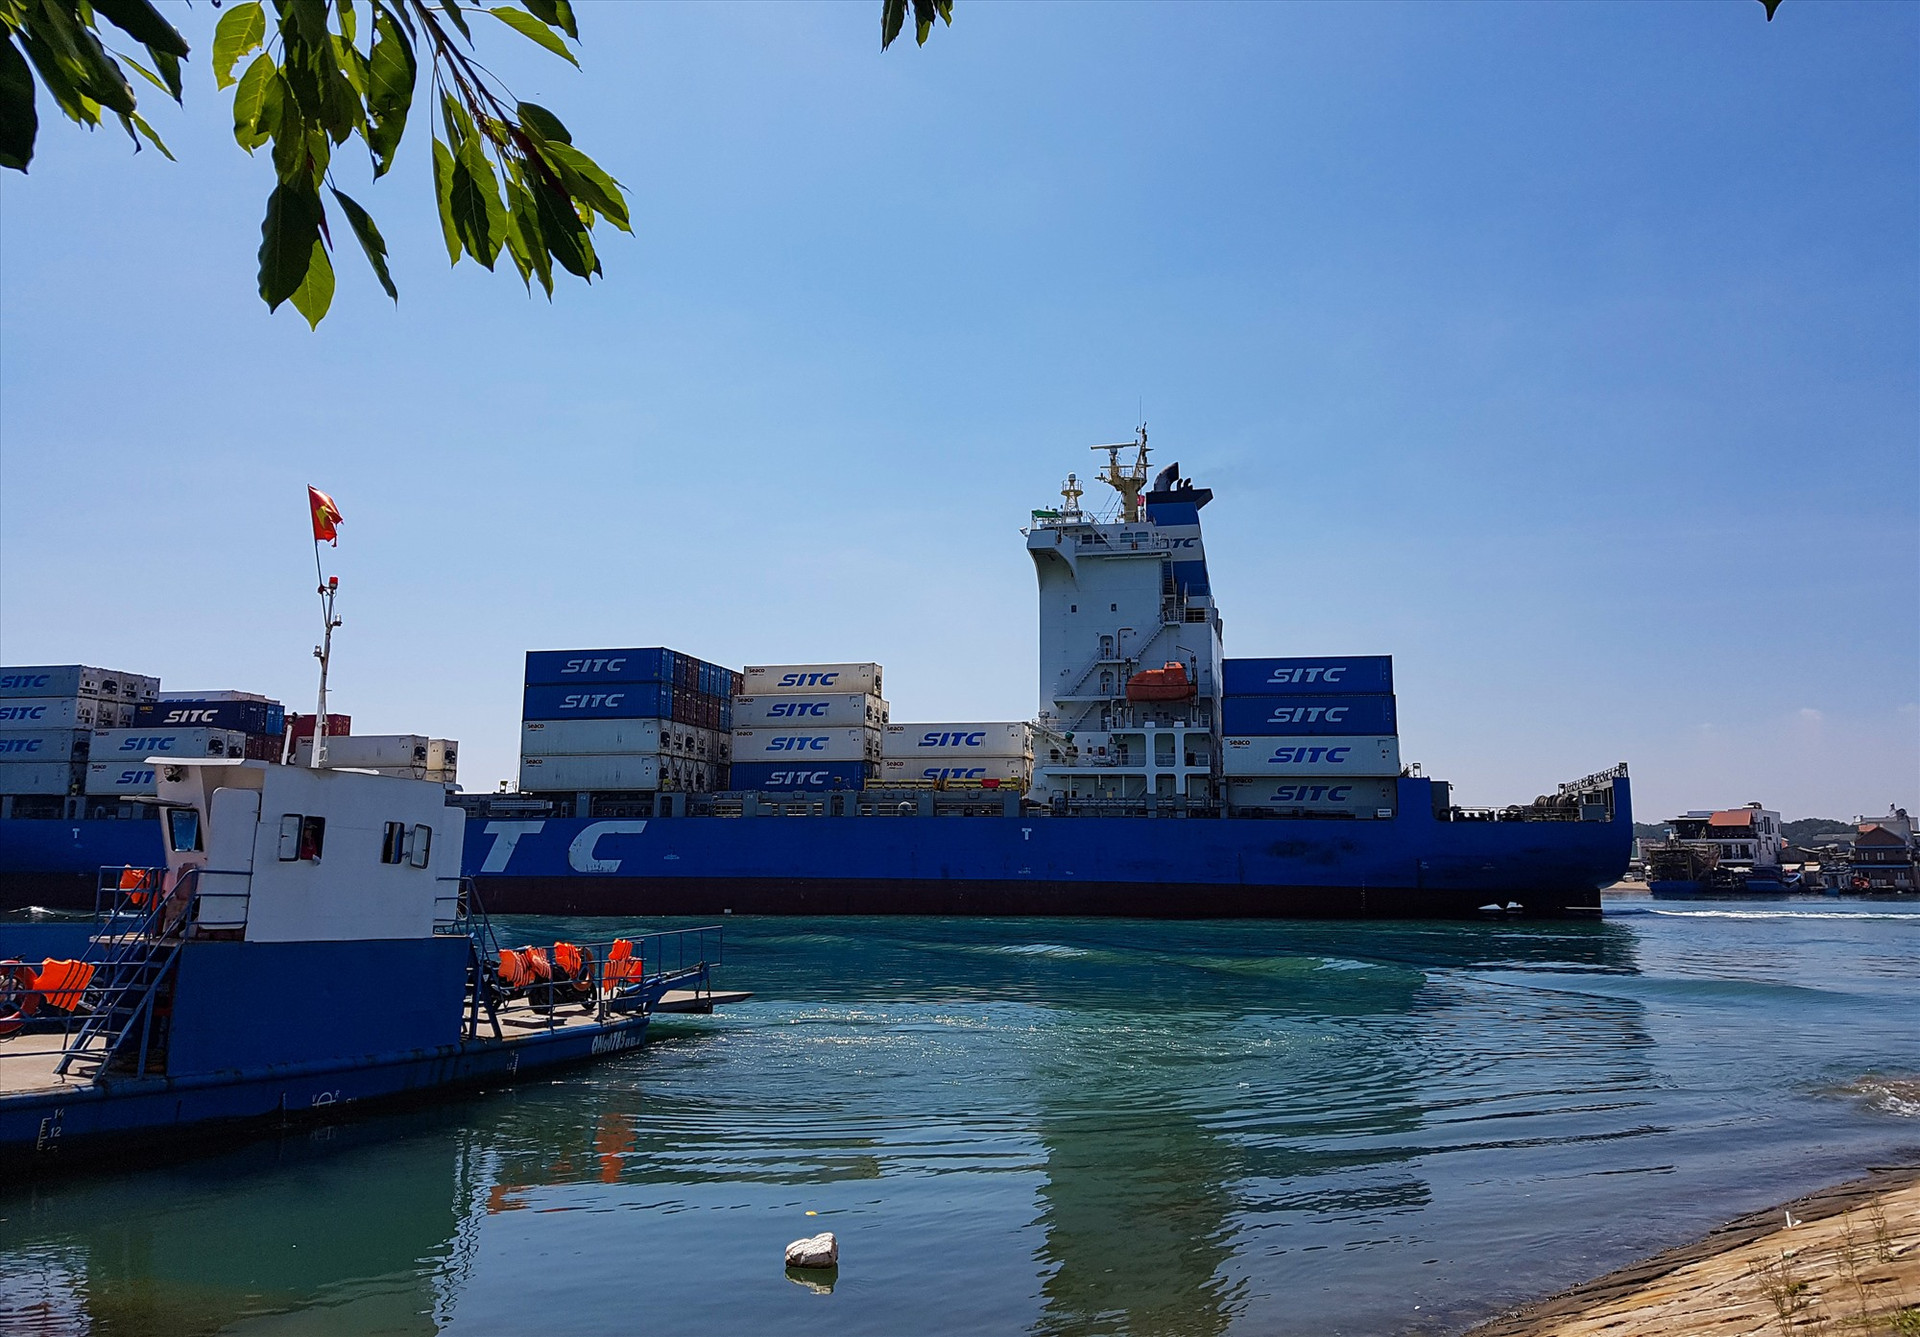 Mỗi ngày, có hàng chục chuyến tàu tải trọng lớn đi qua khu vực phà Tam Hải, theo chính quyền địa phương, phương án xây cầu là bất khả thi. Ảnh: T.C